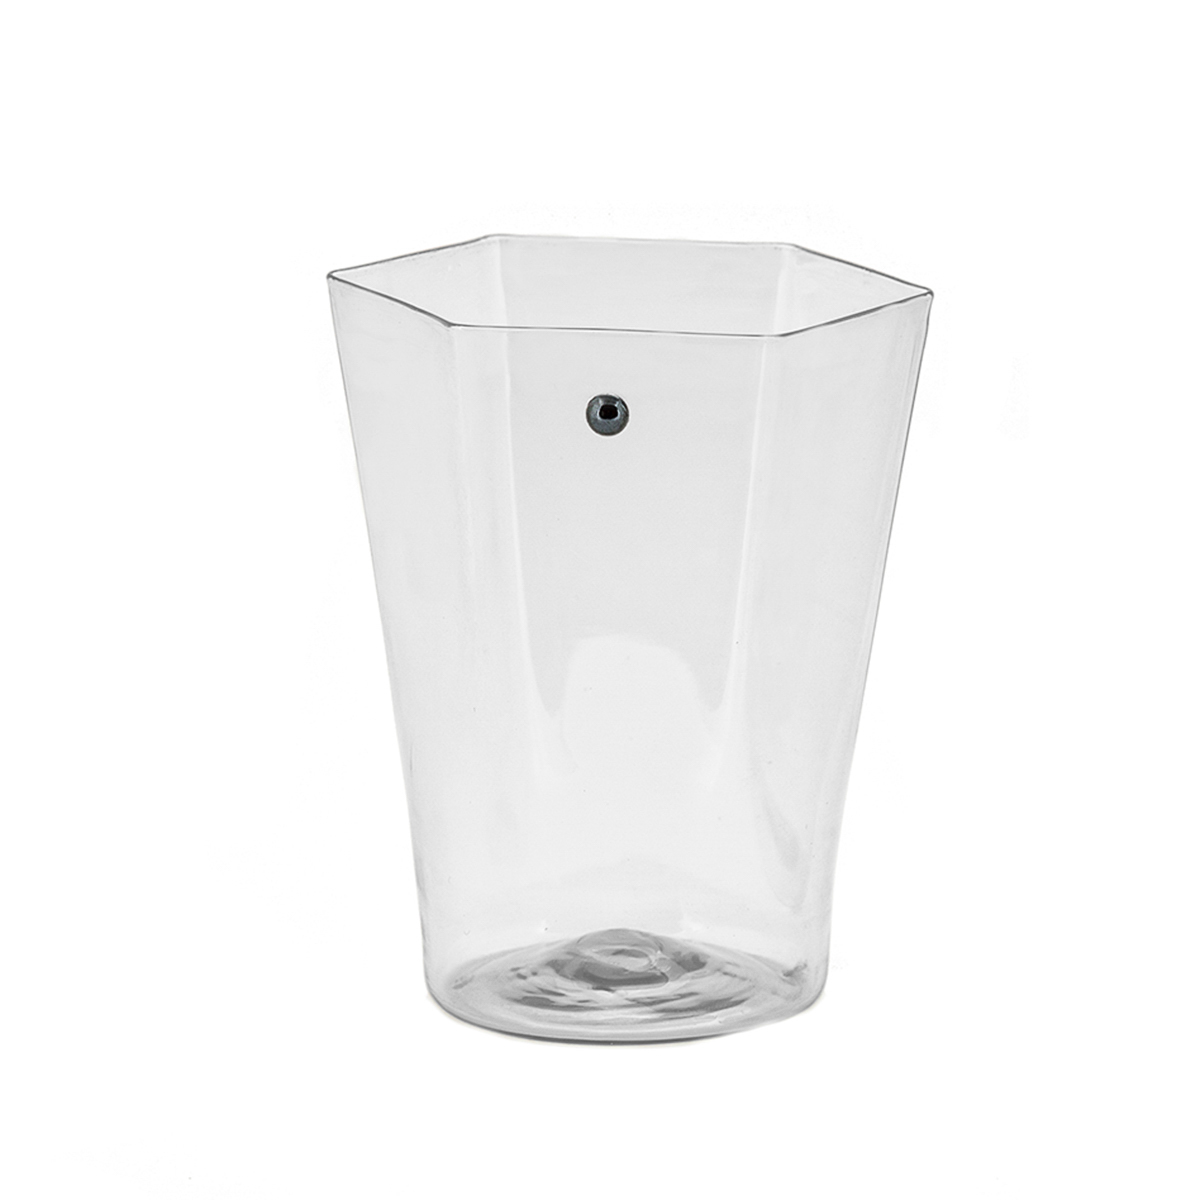 mafalda-glass-crystal-murano-handmade-water-giberto-design-luxury